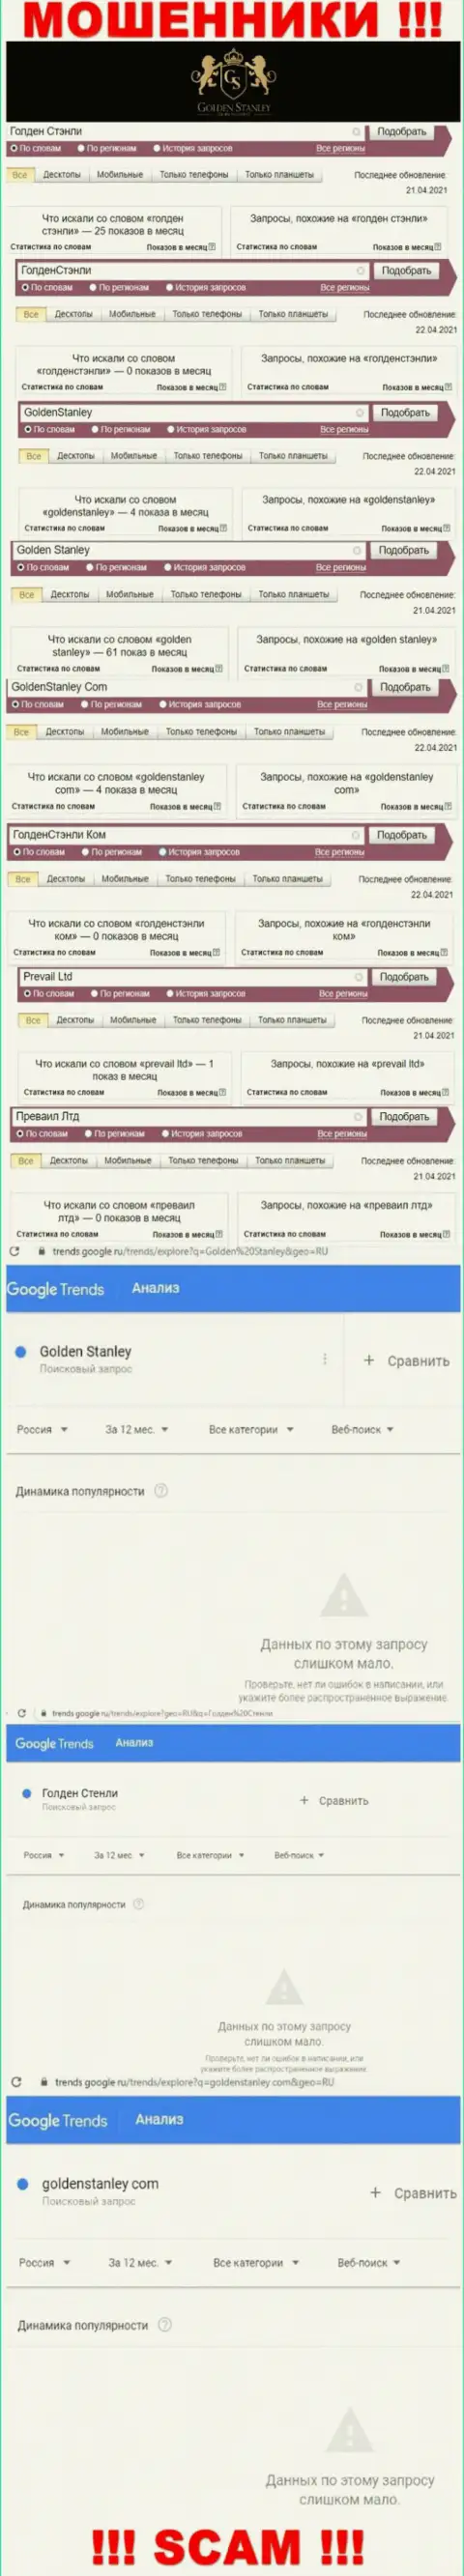 Статистические данные online запросов в поисковиках всемирной сети касательно жуликов Golden Stanley